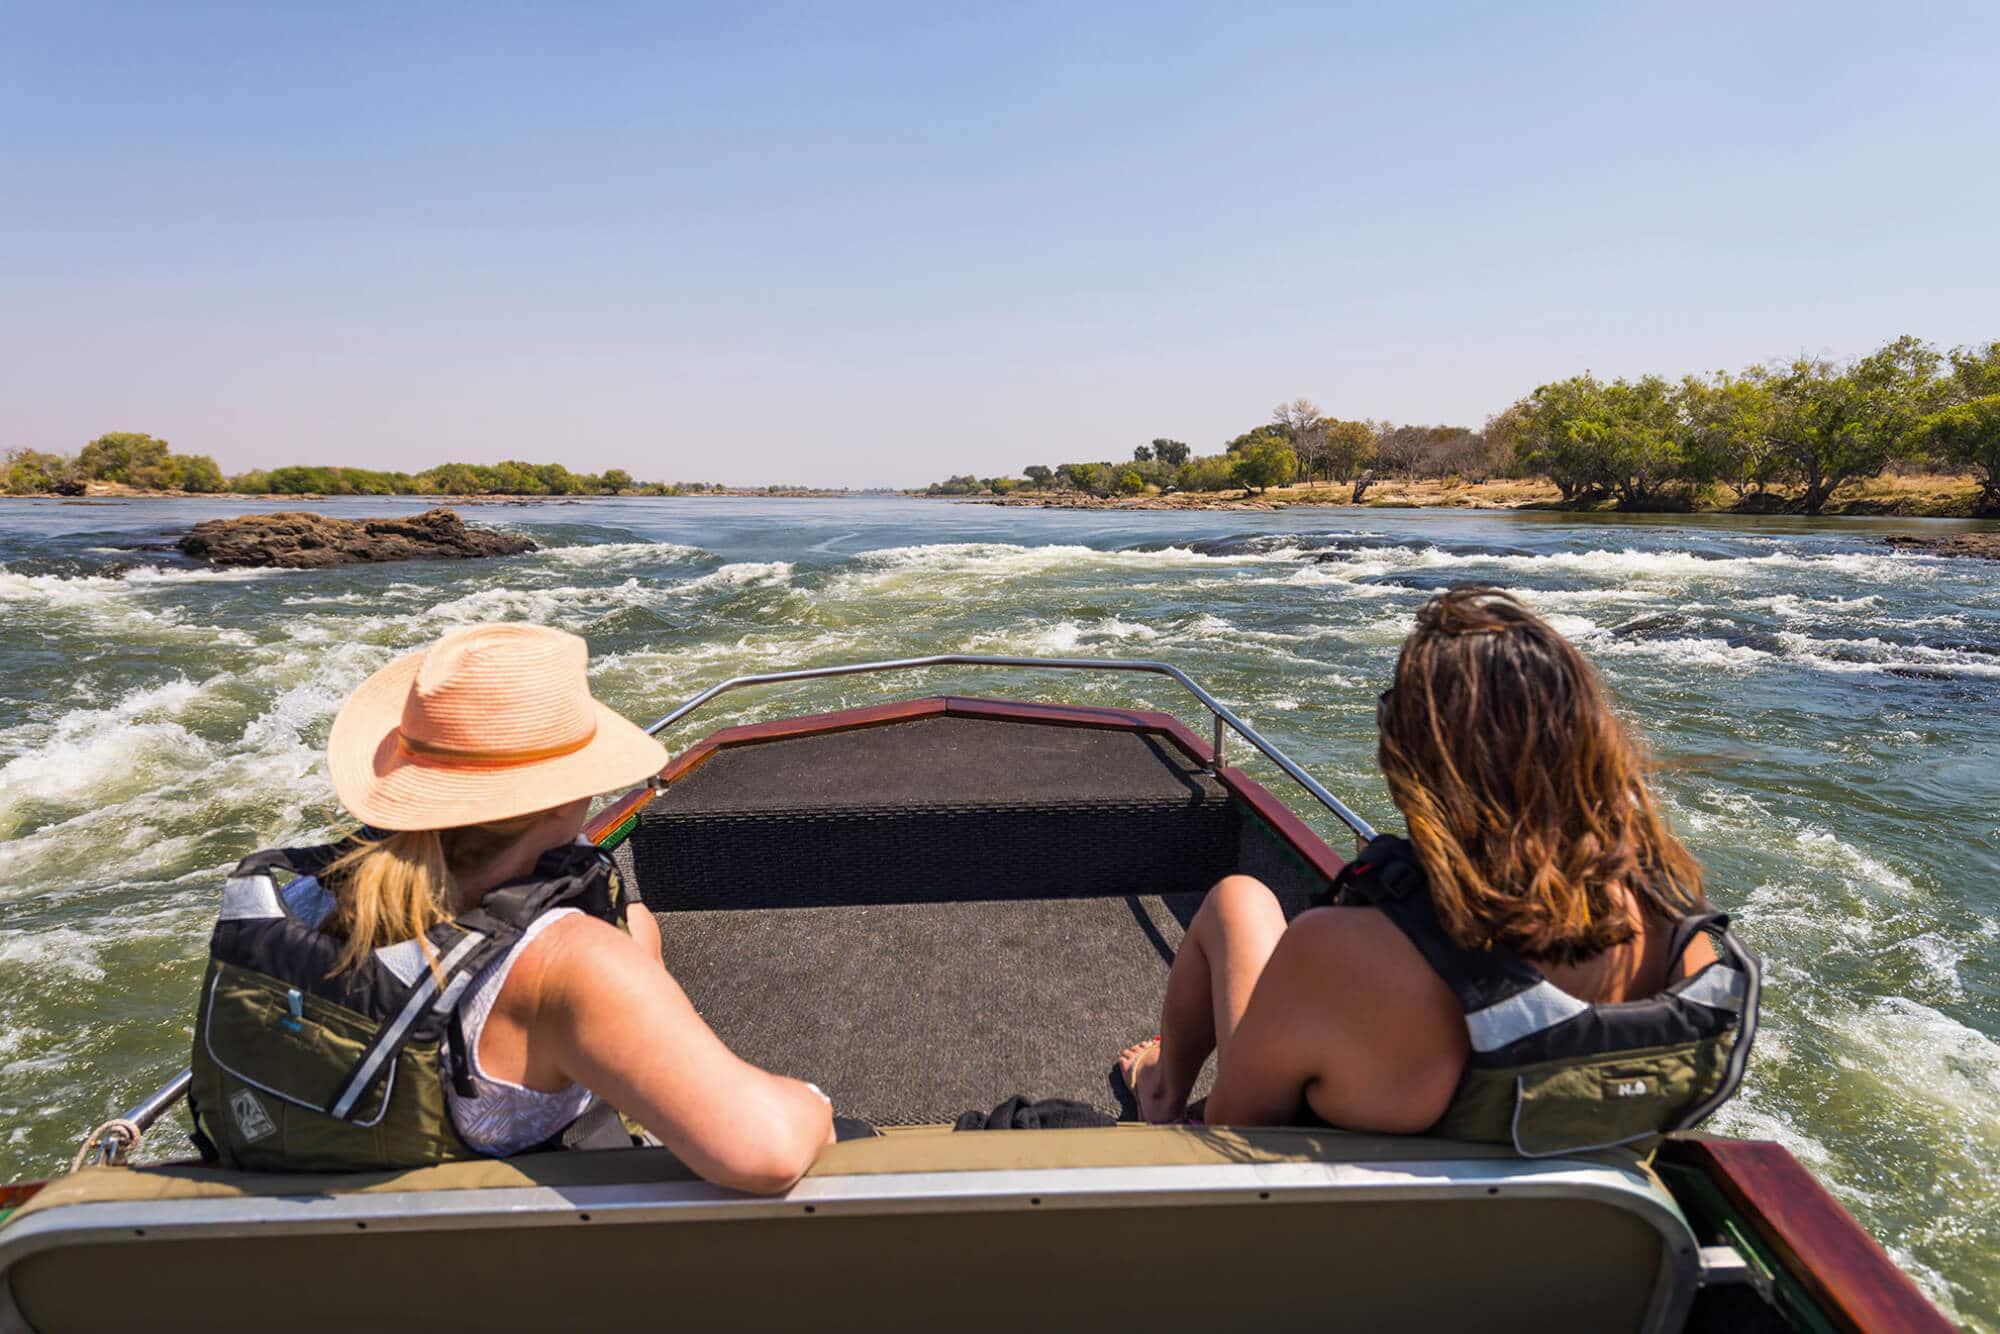 Boat cruise on the Zambezi River